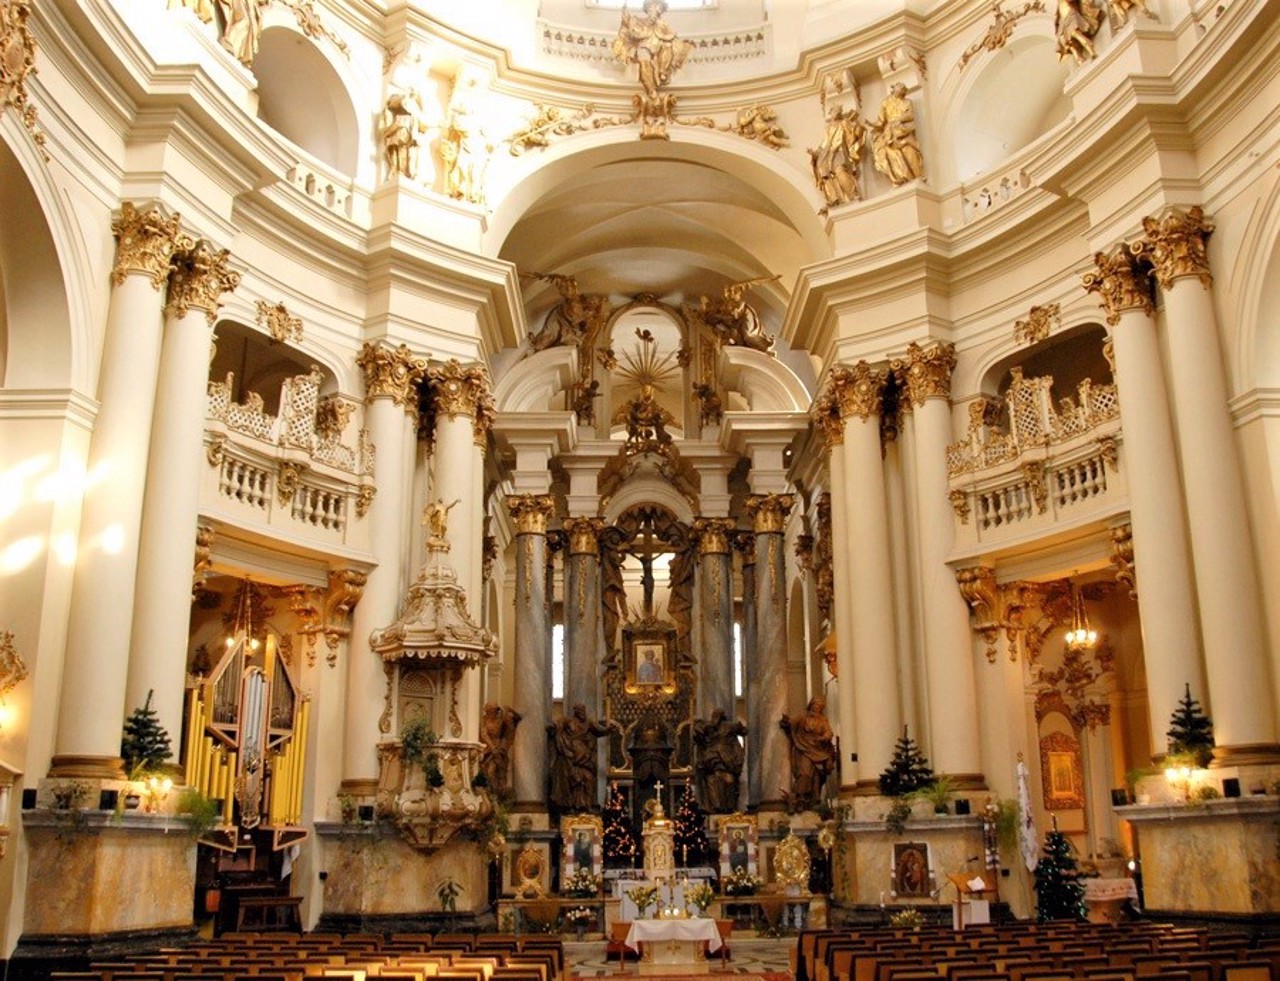 Dominican Church, Lviv